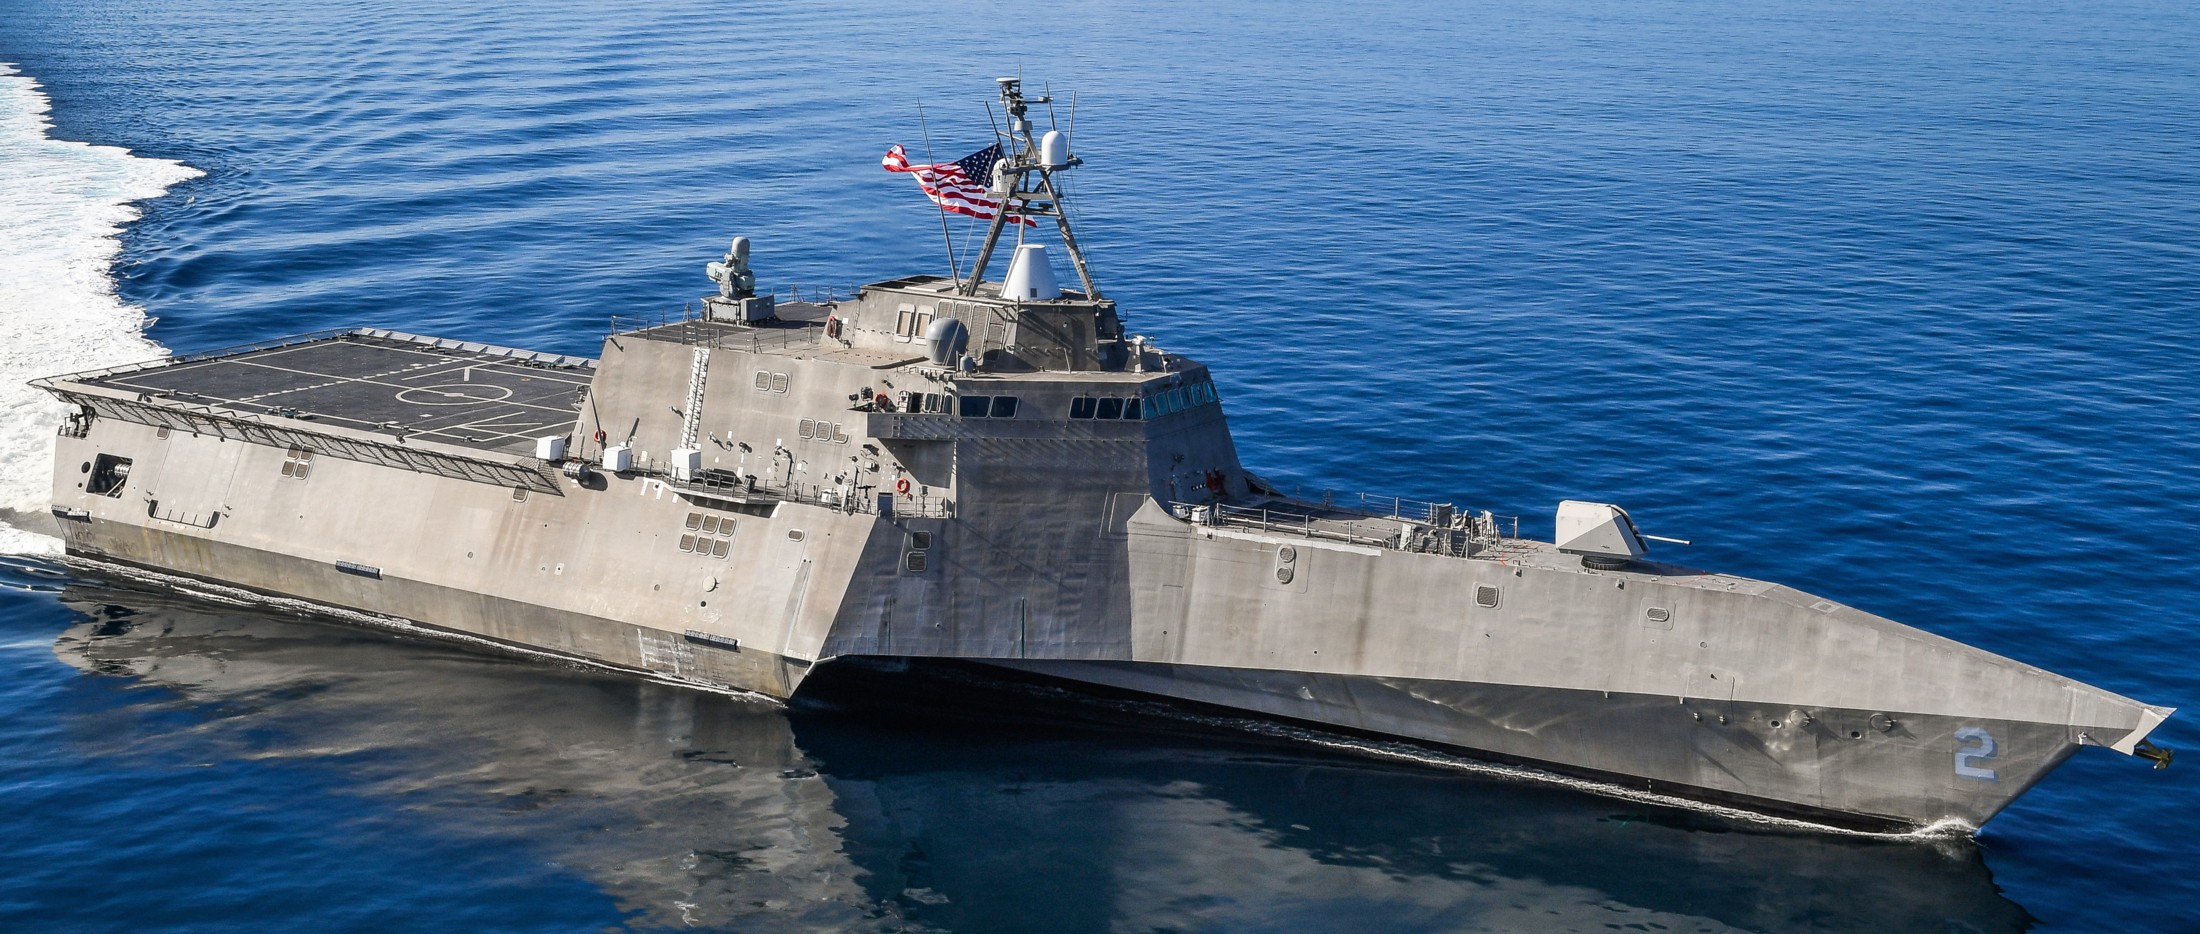 فئة الاستقلال السفينة القتالية الساحلية الأمريكية البحرية austal 11c